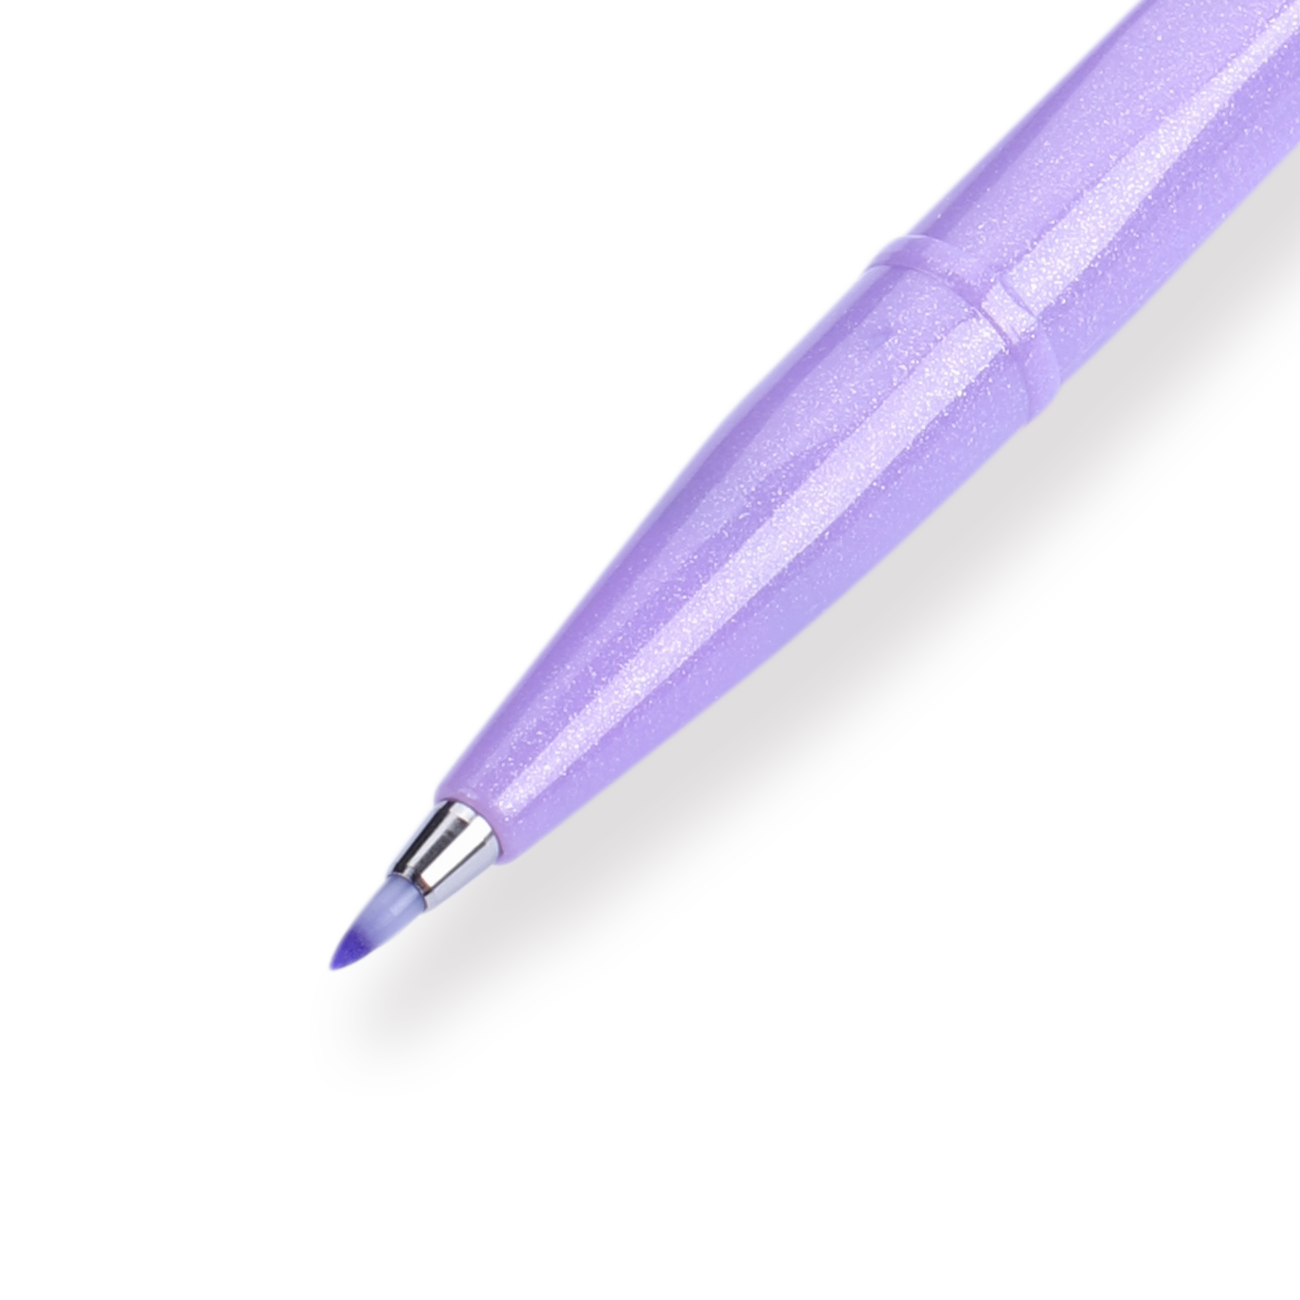 Pentel Fude Touch Brush Sign Pen 6 Colors Set A